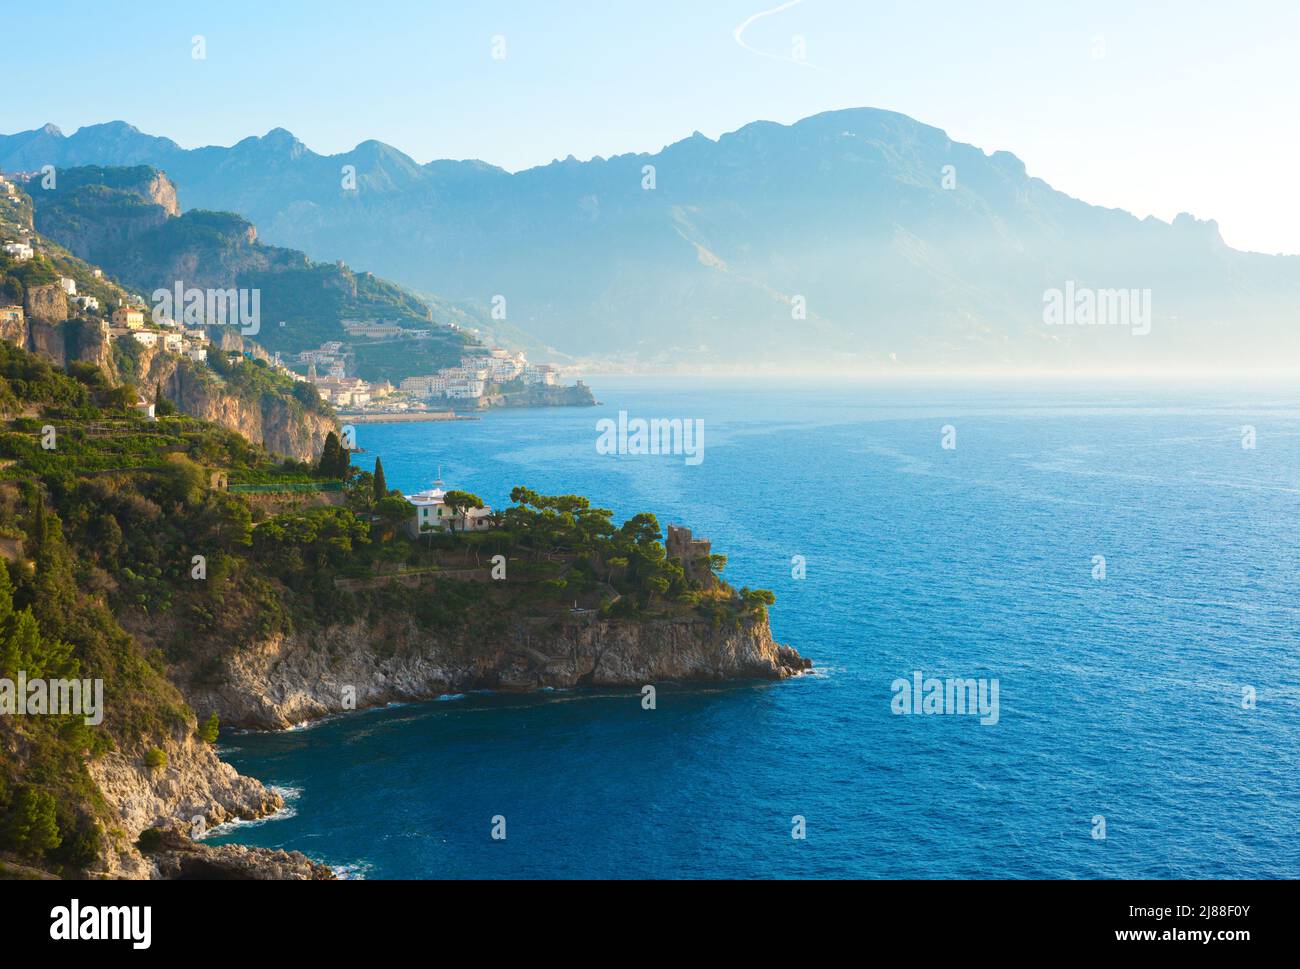 Vue pittoresque sur la côte amalfitaine depuis la Conca dei Marini avec brume matinale au-dessus de la mer, Golfe de Salerne, Campanie, Italie. Banque D'Images